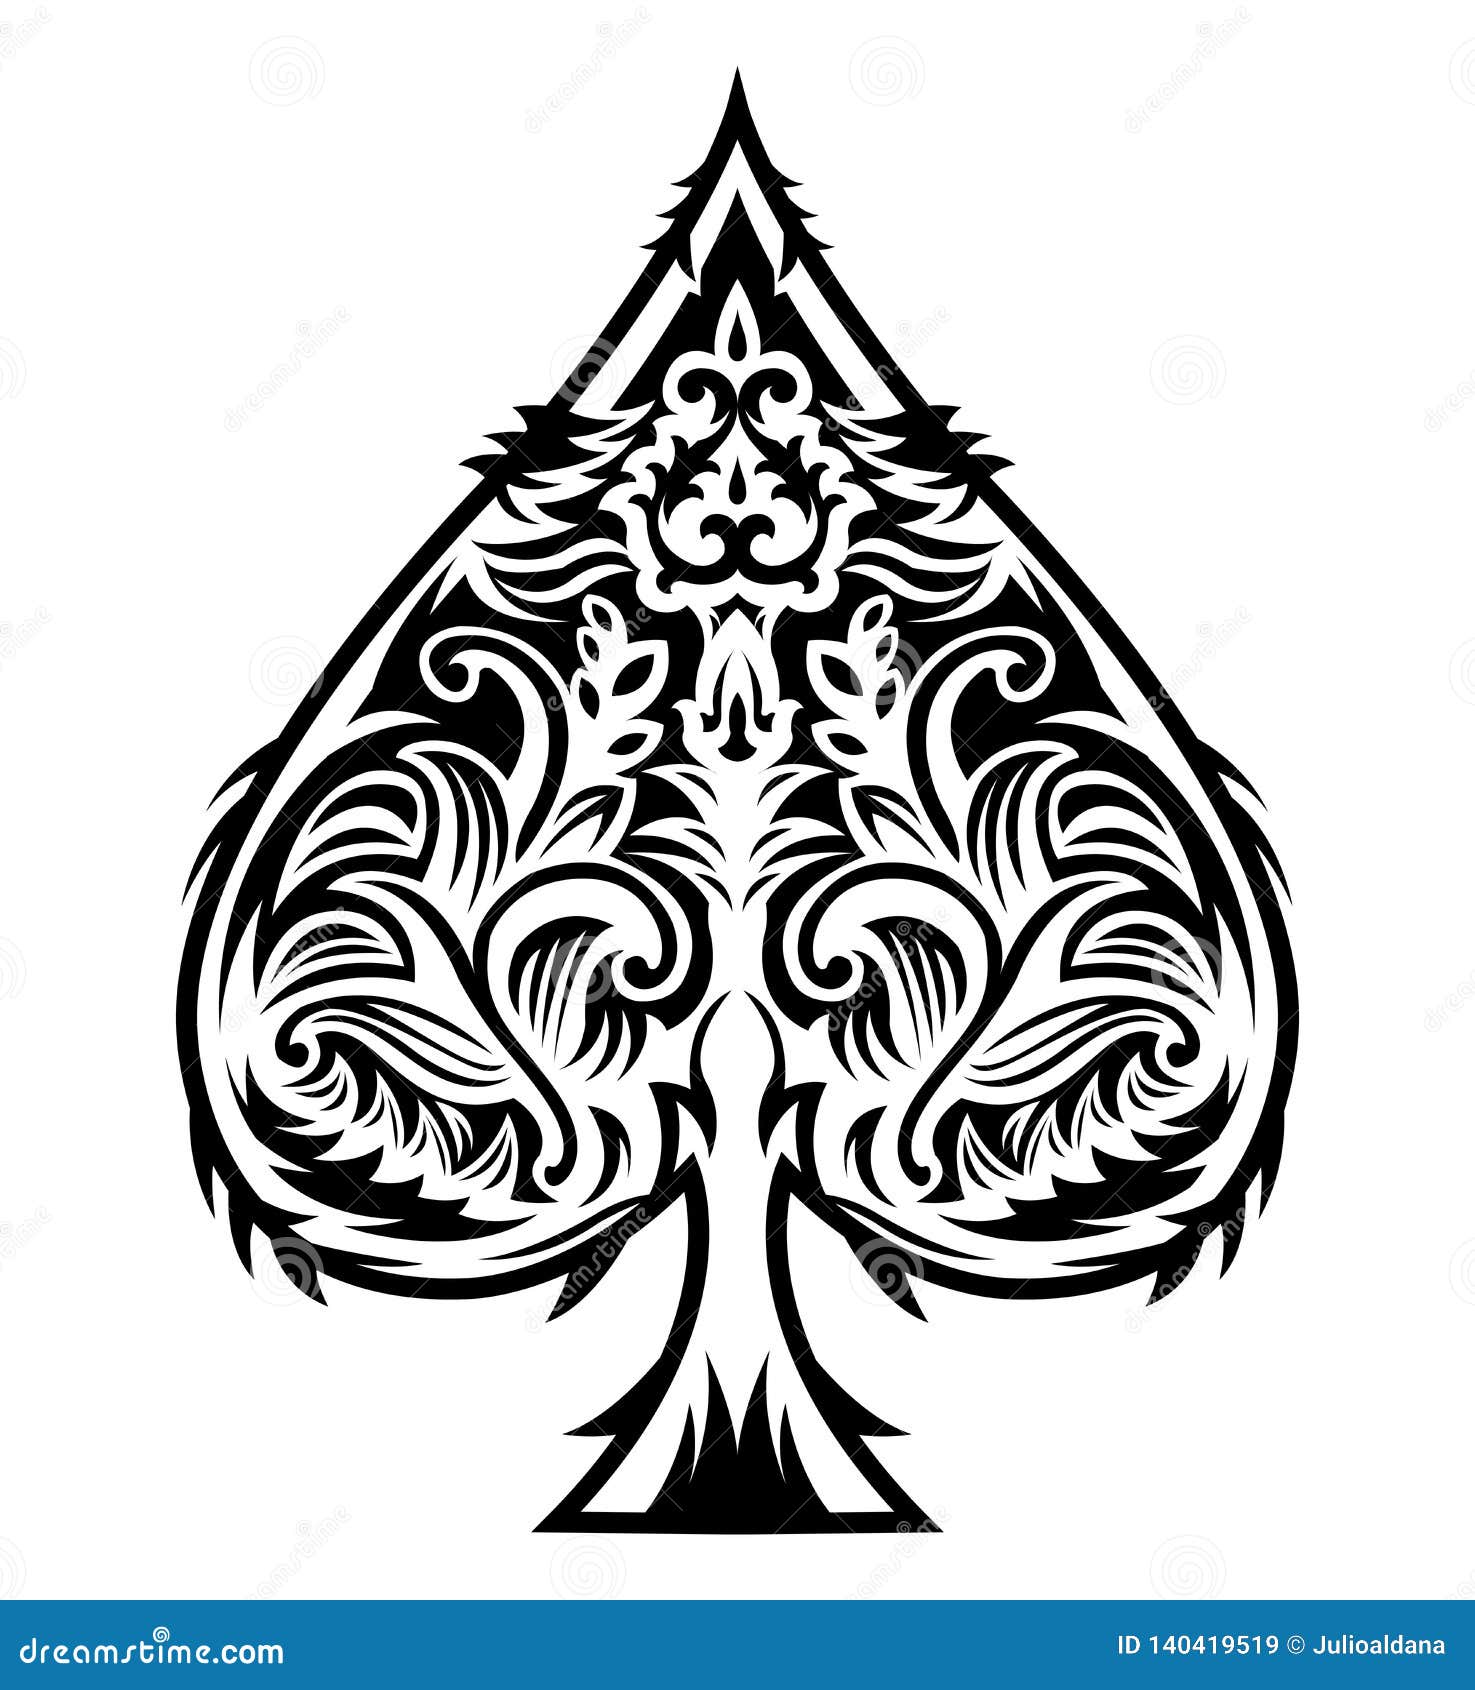 Tribal Style Spade Ace Design, Poker Emblem Vector Illustration